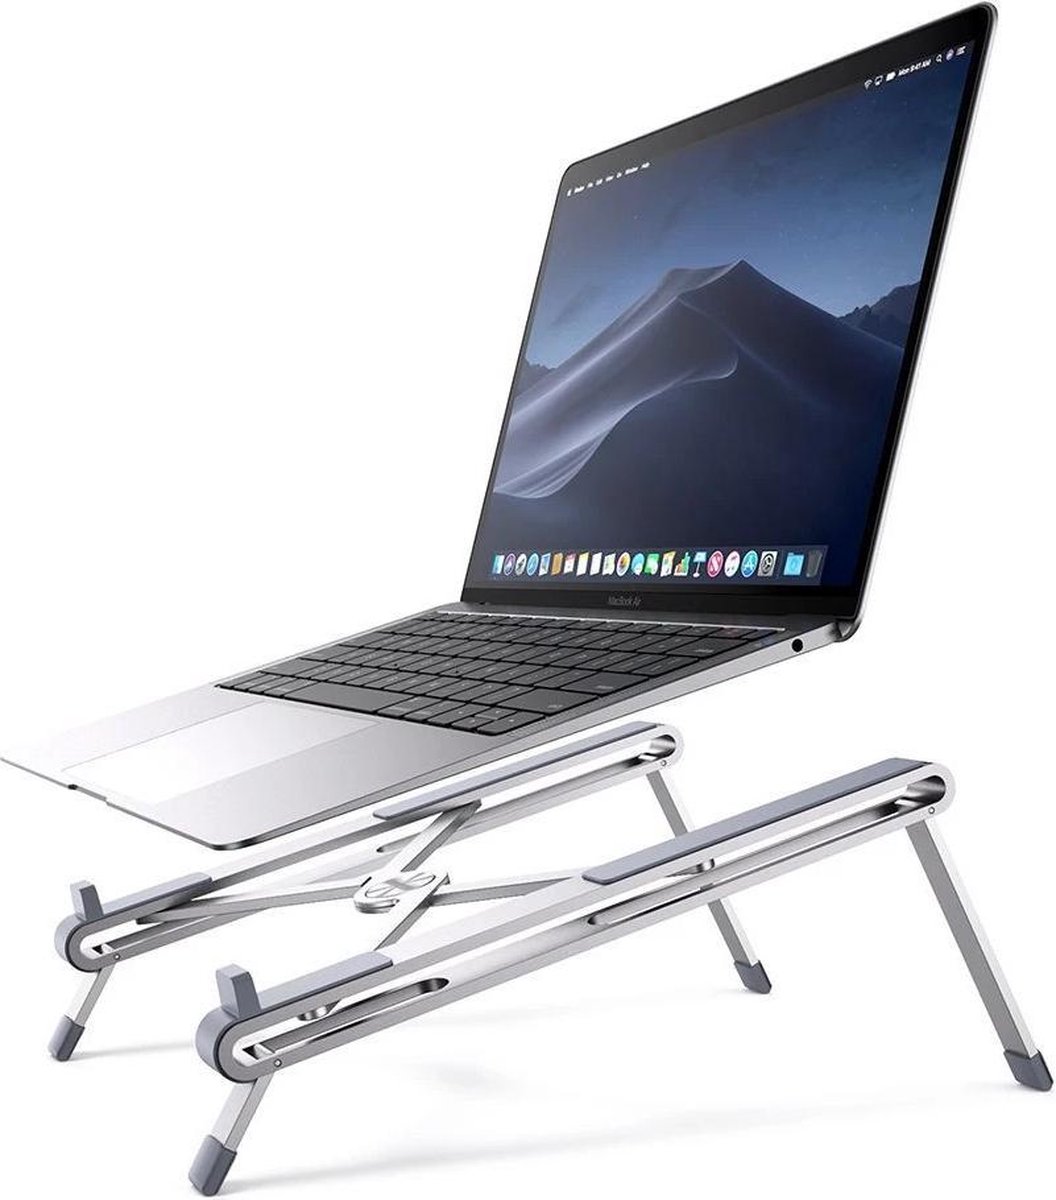 UGREEN Metal portable laptop houder - Compact standaard en vouwbaar - bureau accessoire voor Macbook pro / Macbook Air & Windows 10 laptops